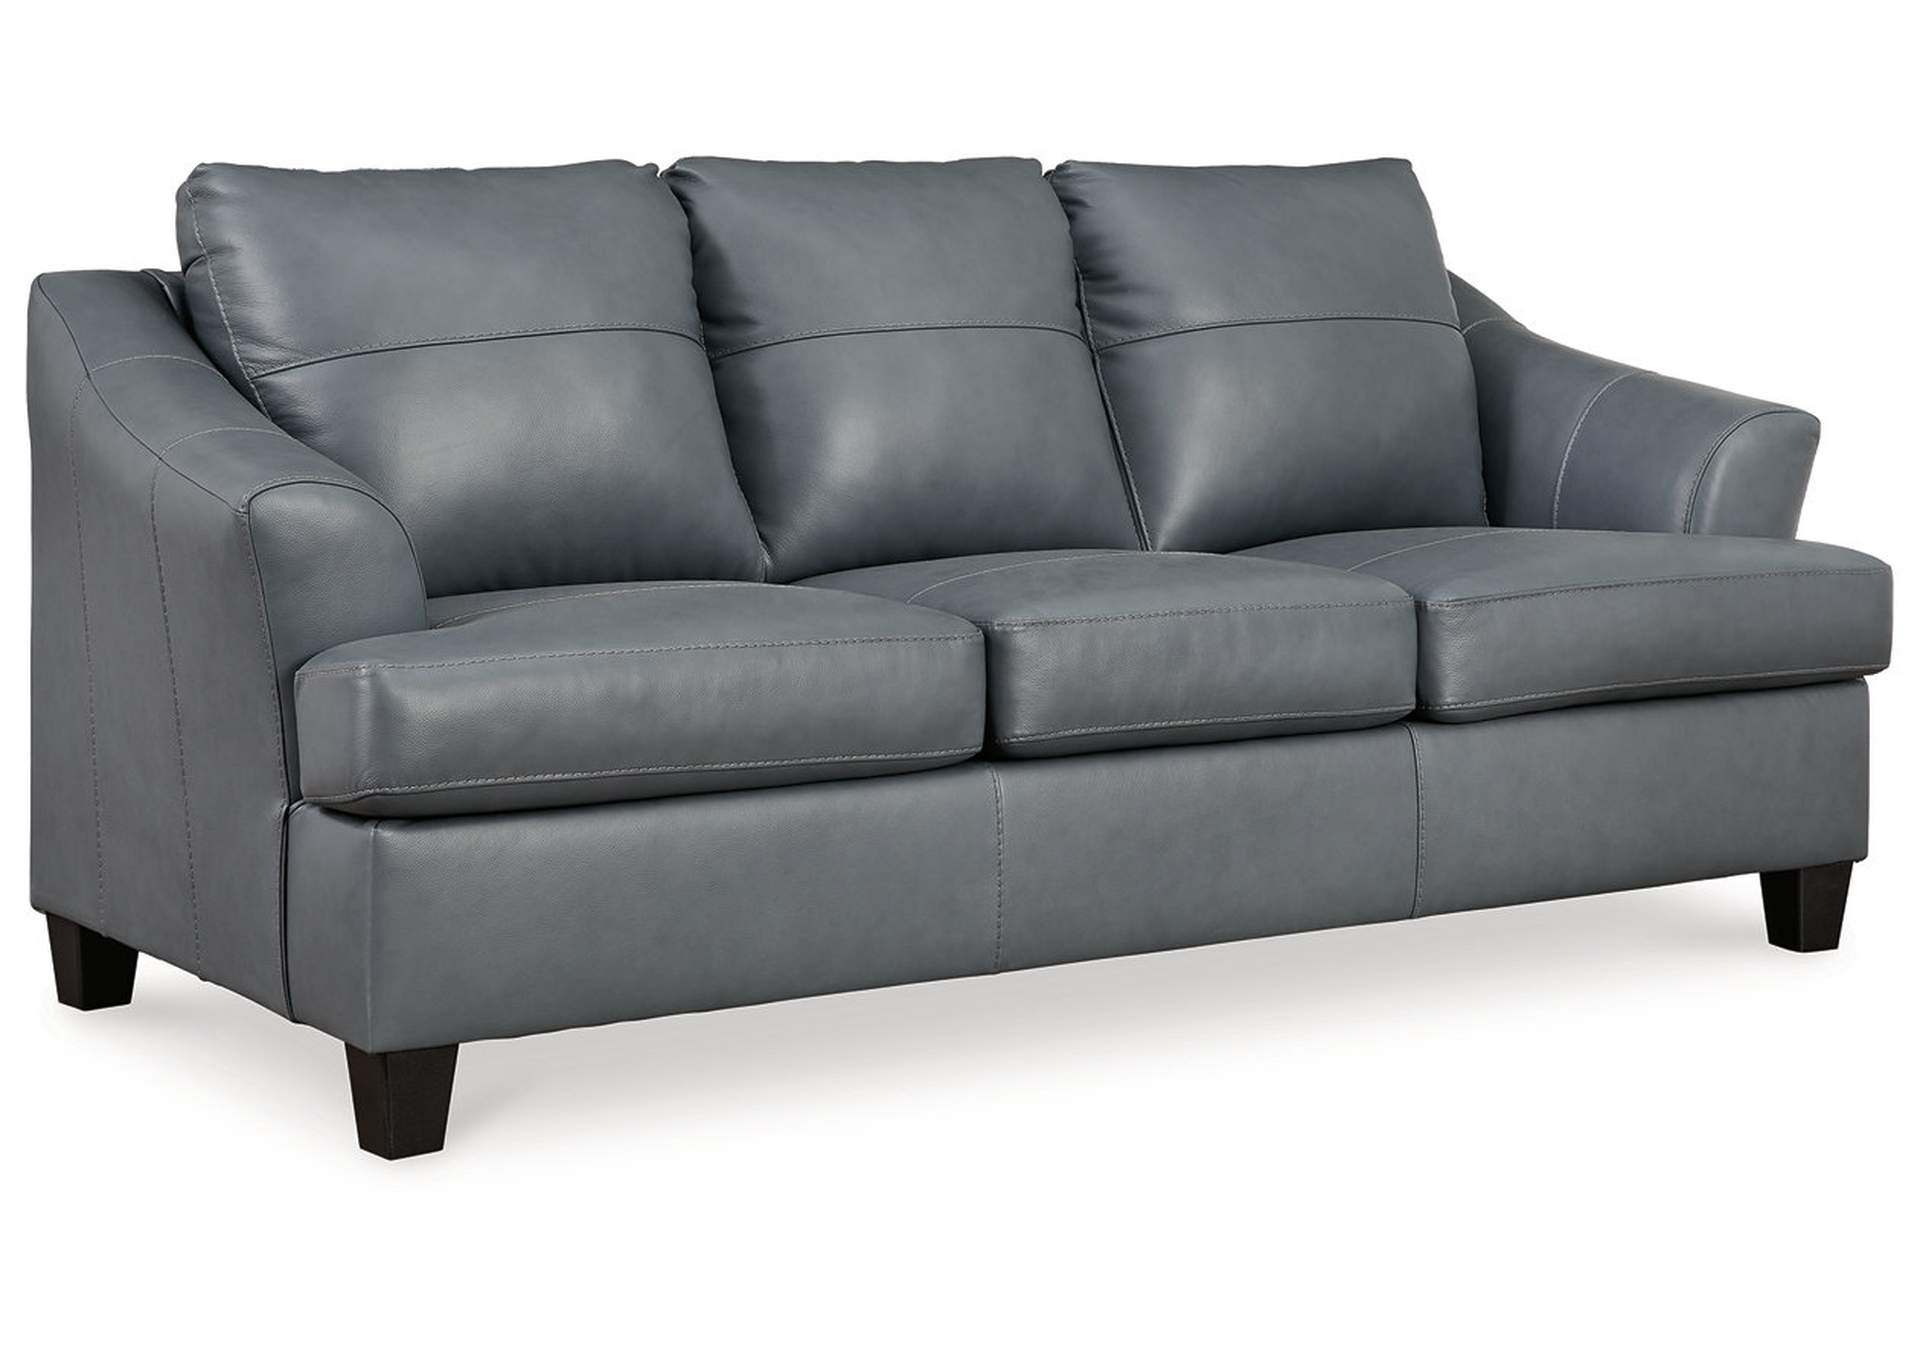 Ashley modern leather sofa in grey